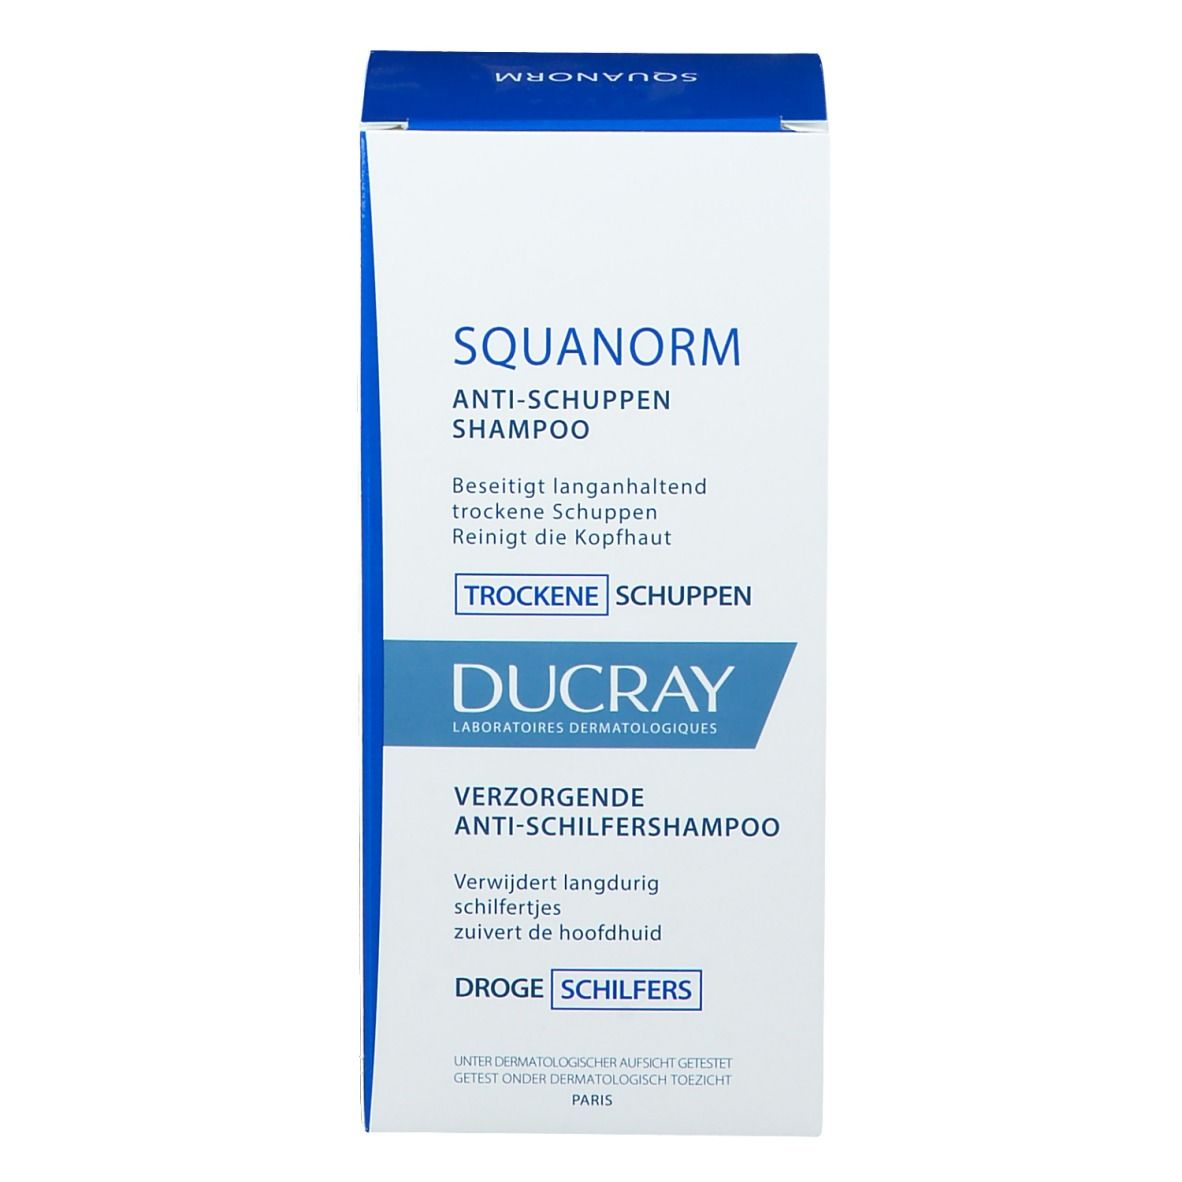 DUCRAY Squanorm Shampoo Trattante Antiforfora - Forfora Secca